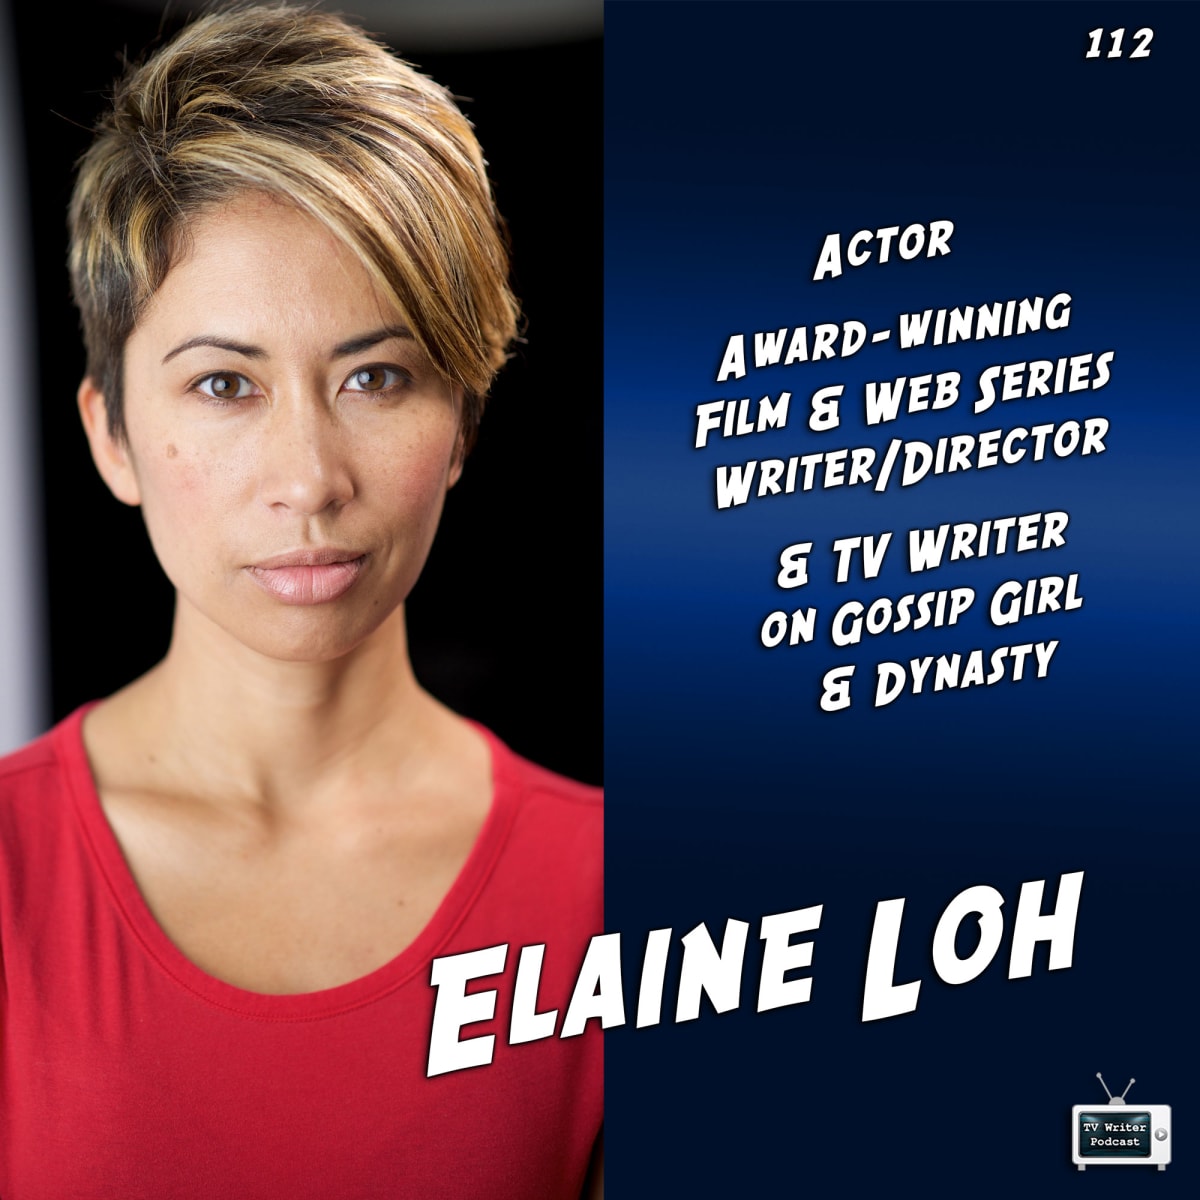 TV Writer Podcast 112 - Elaine Loh (Gossip Girl, Dynasty)